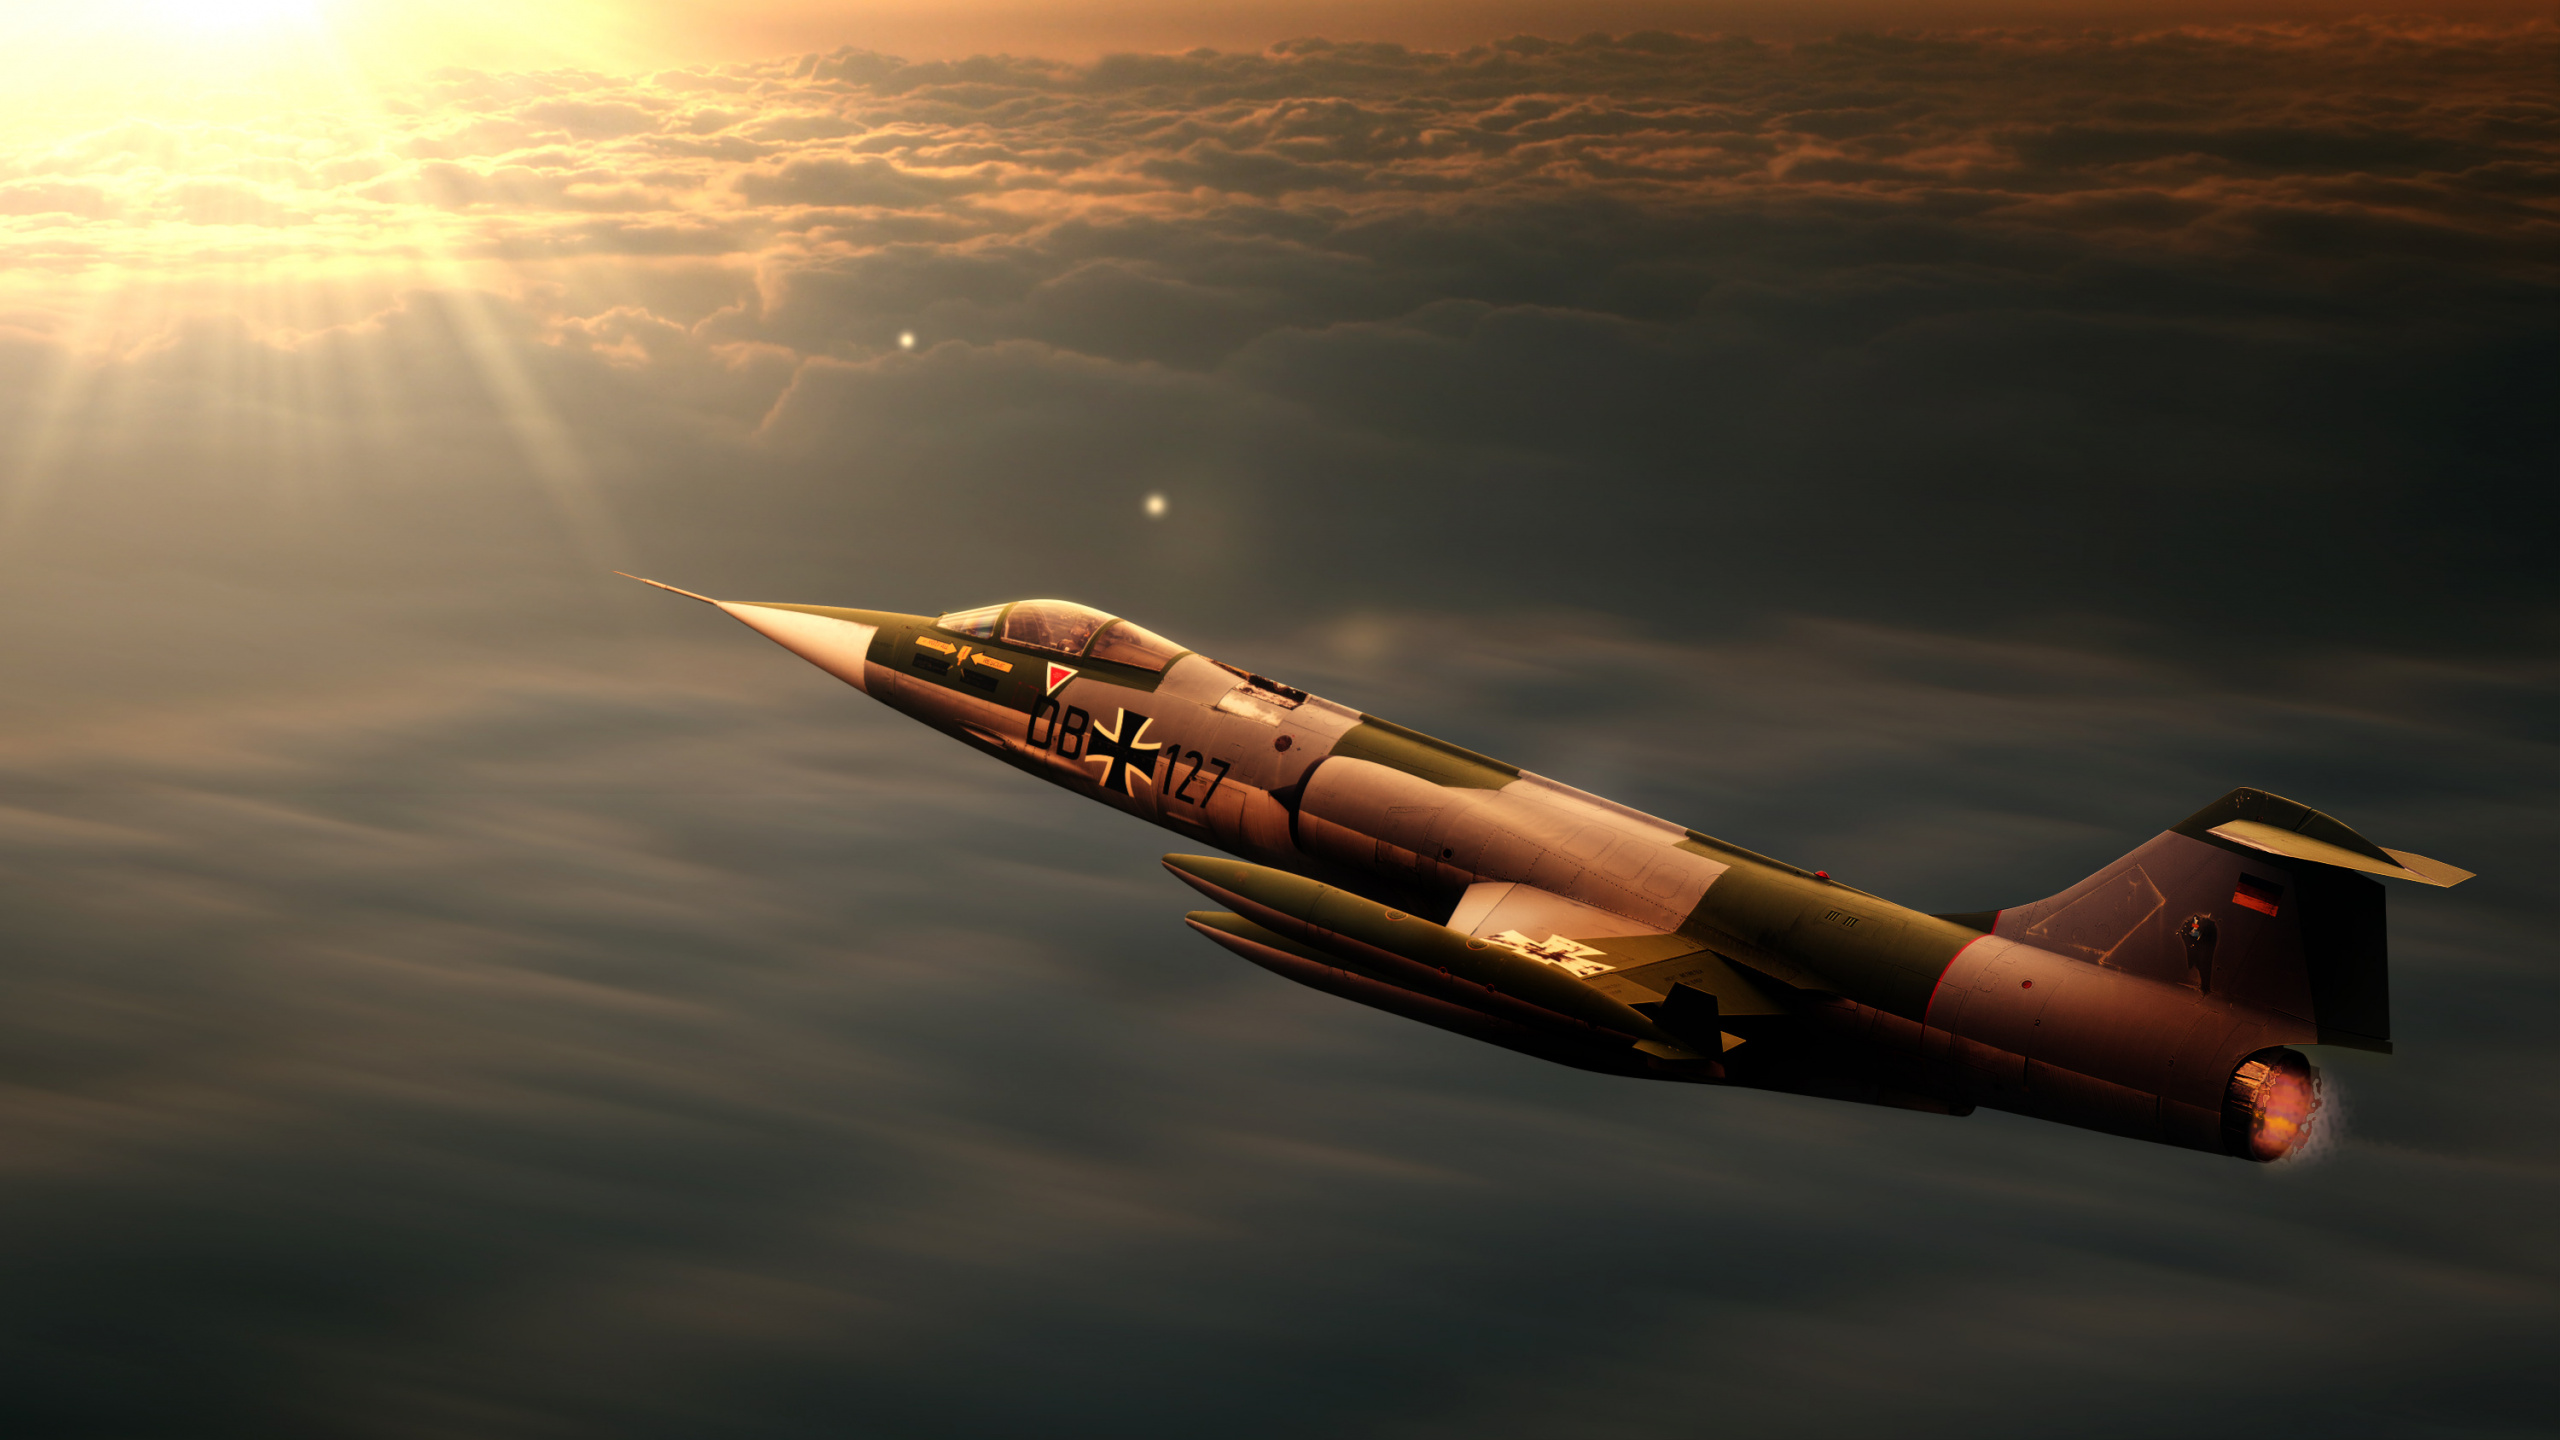 洛克希德 F-104 星际战斗机, 军用飞机, 空军, 航空, 航班 壁纸 2560x1440 允许